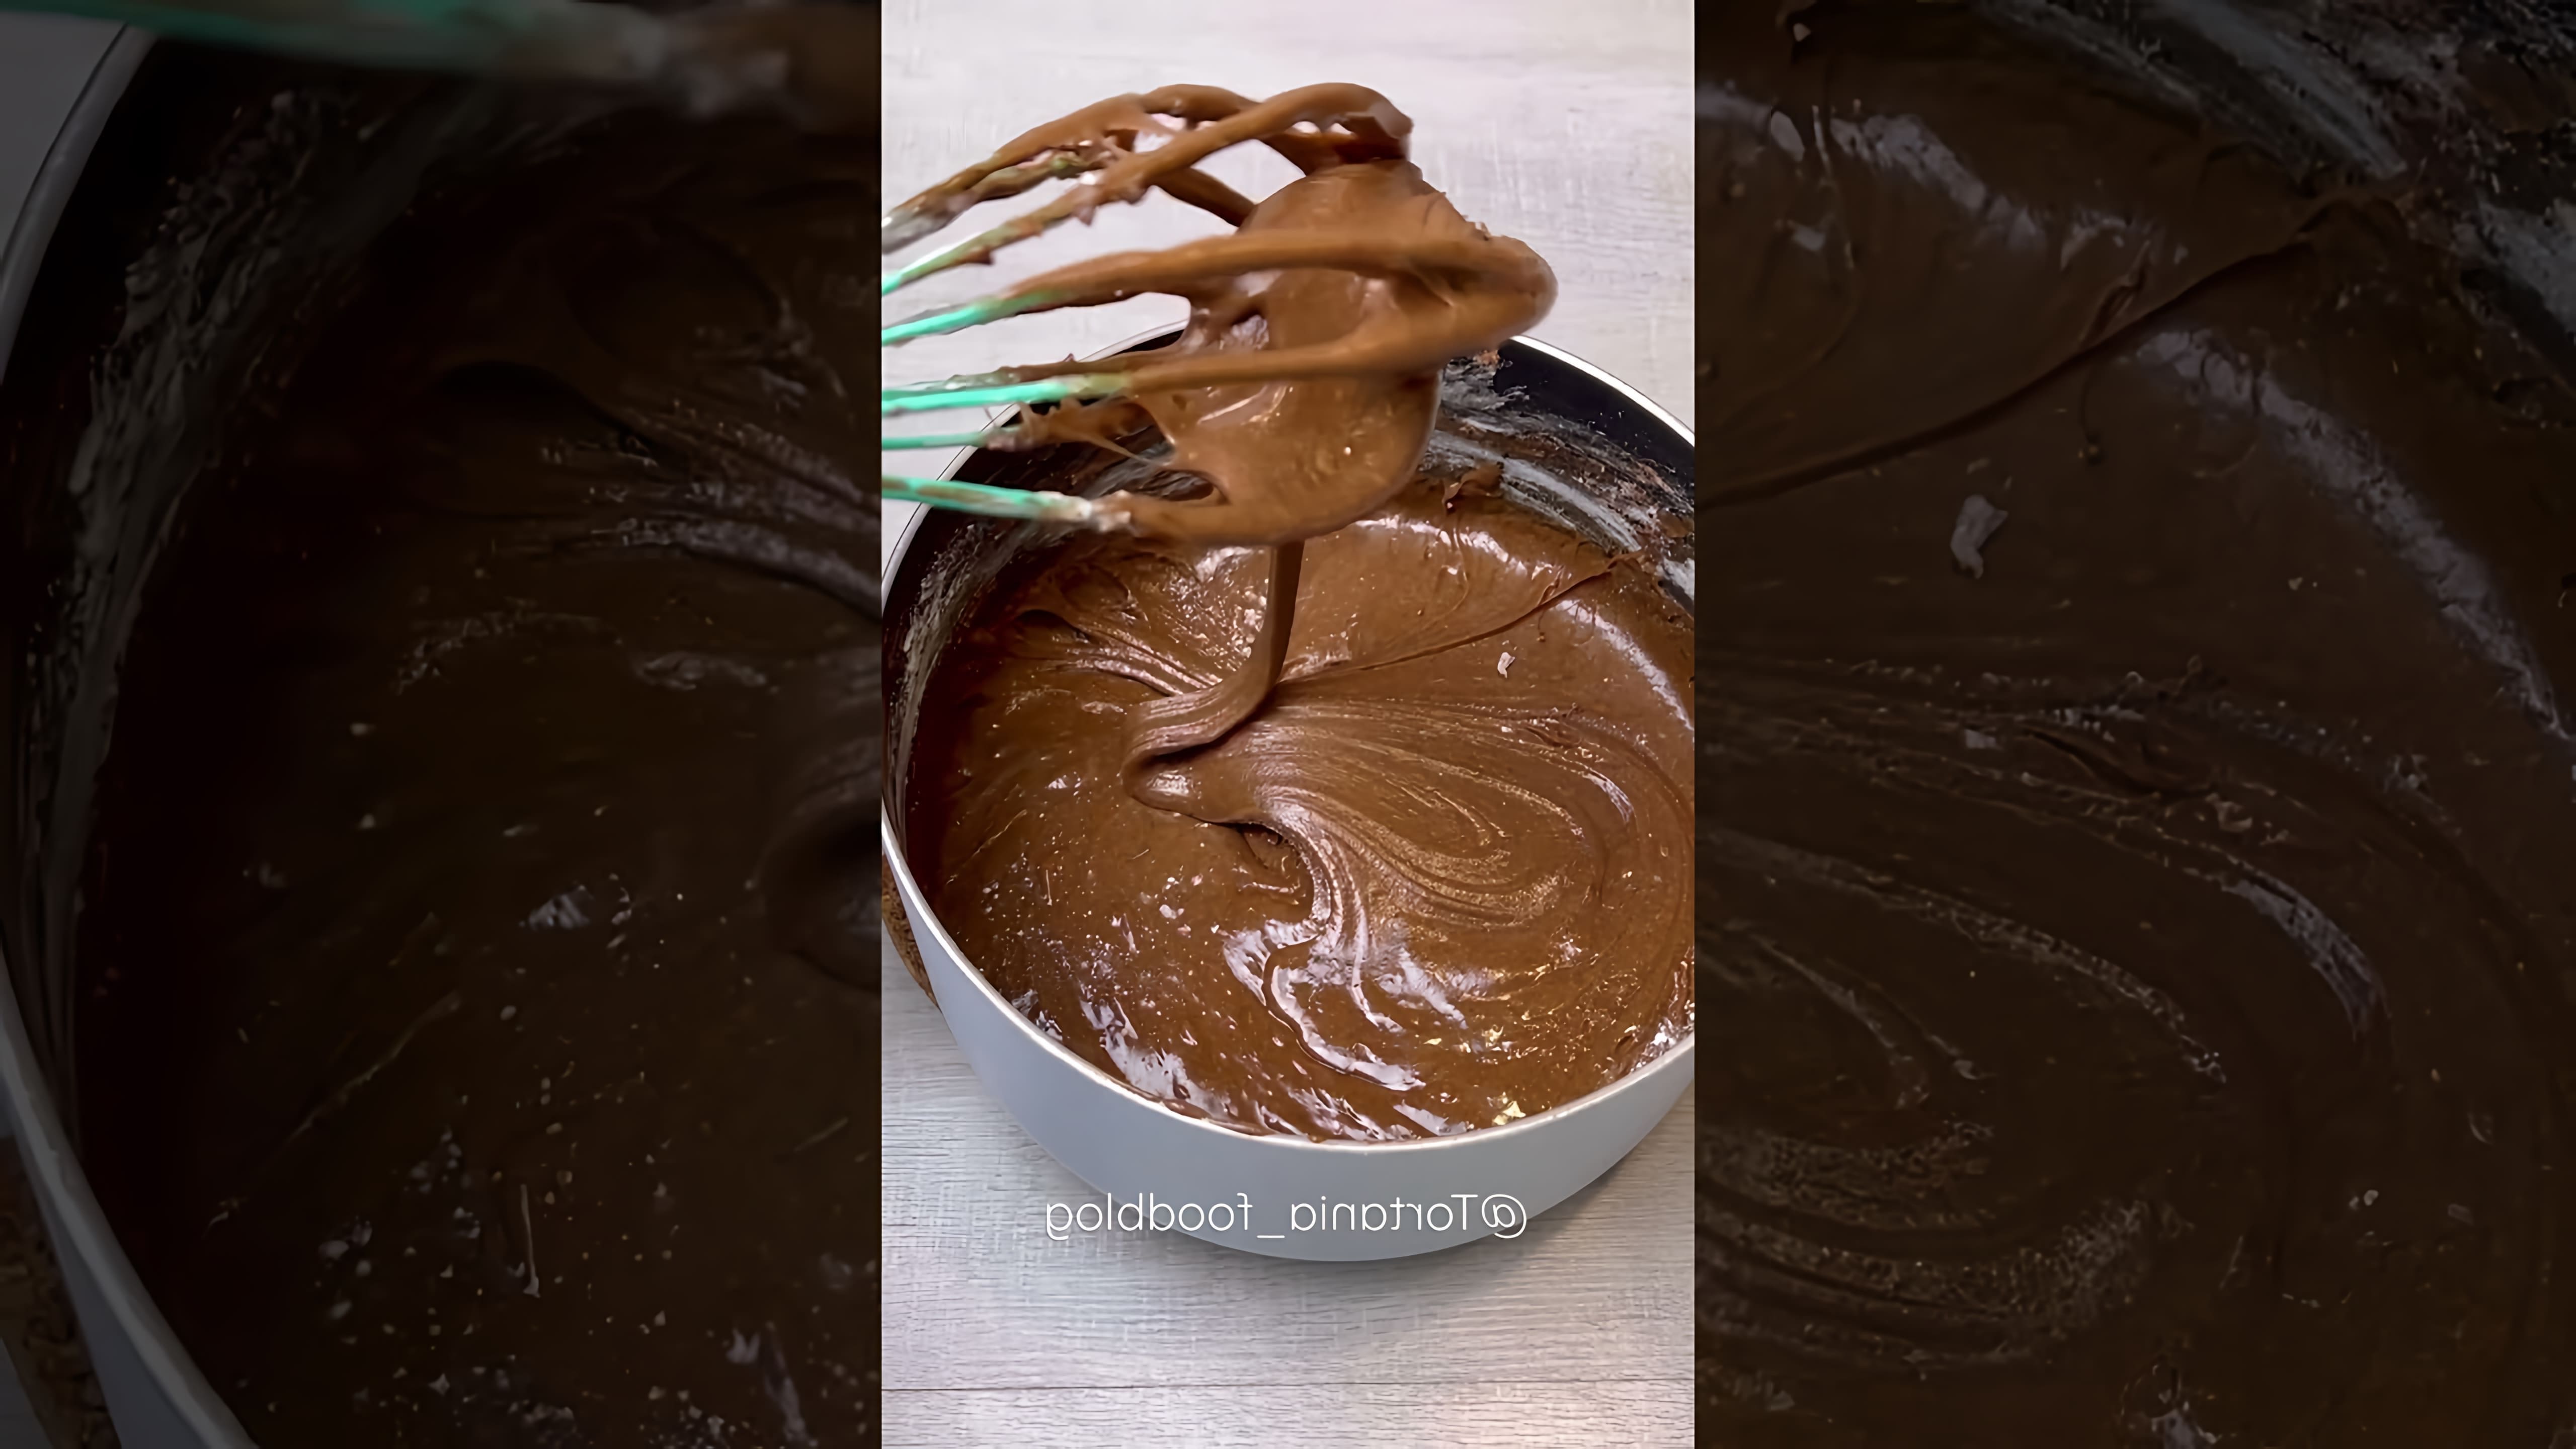 В этом видео демонстрируется рецепт приготовления медовых шоколадных коржей